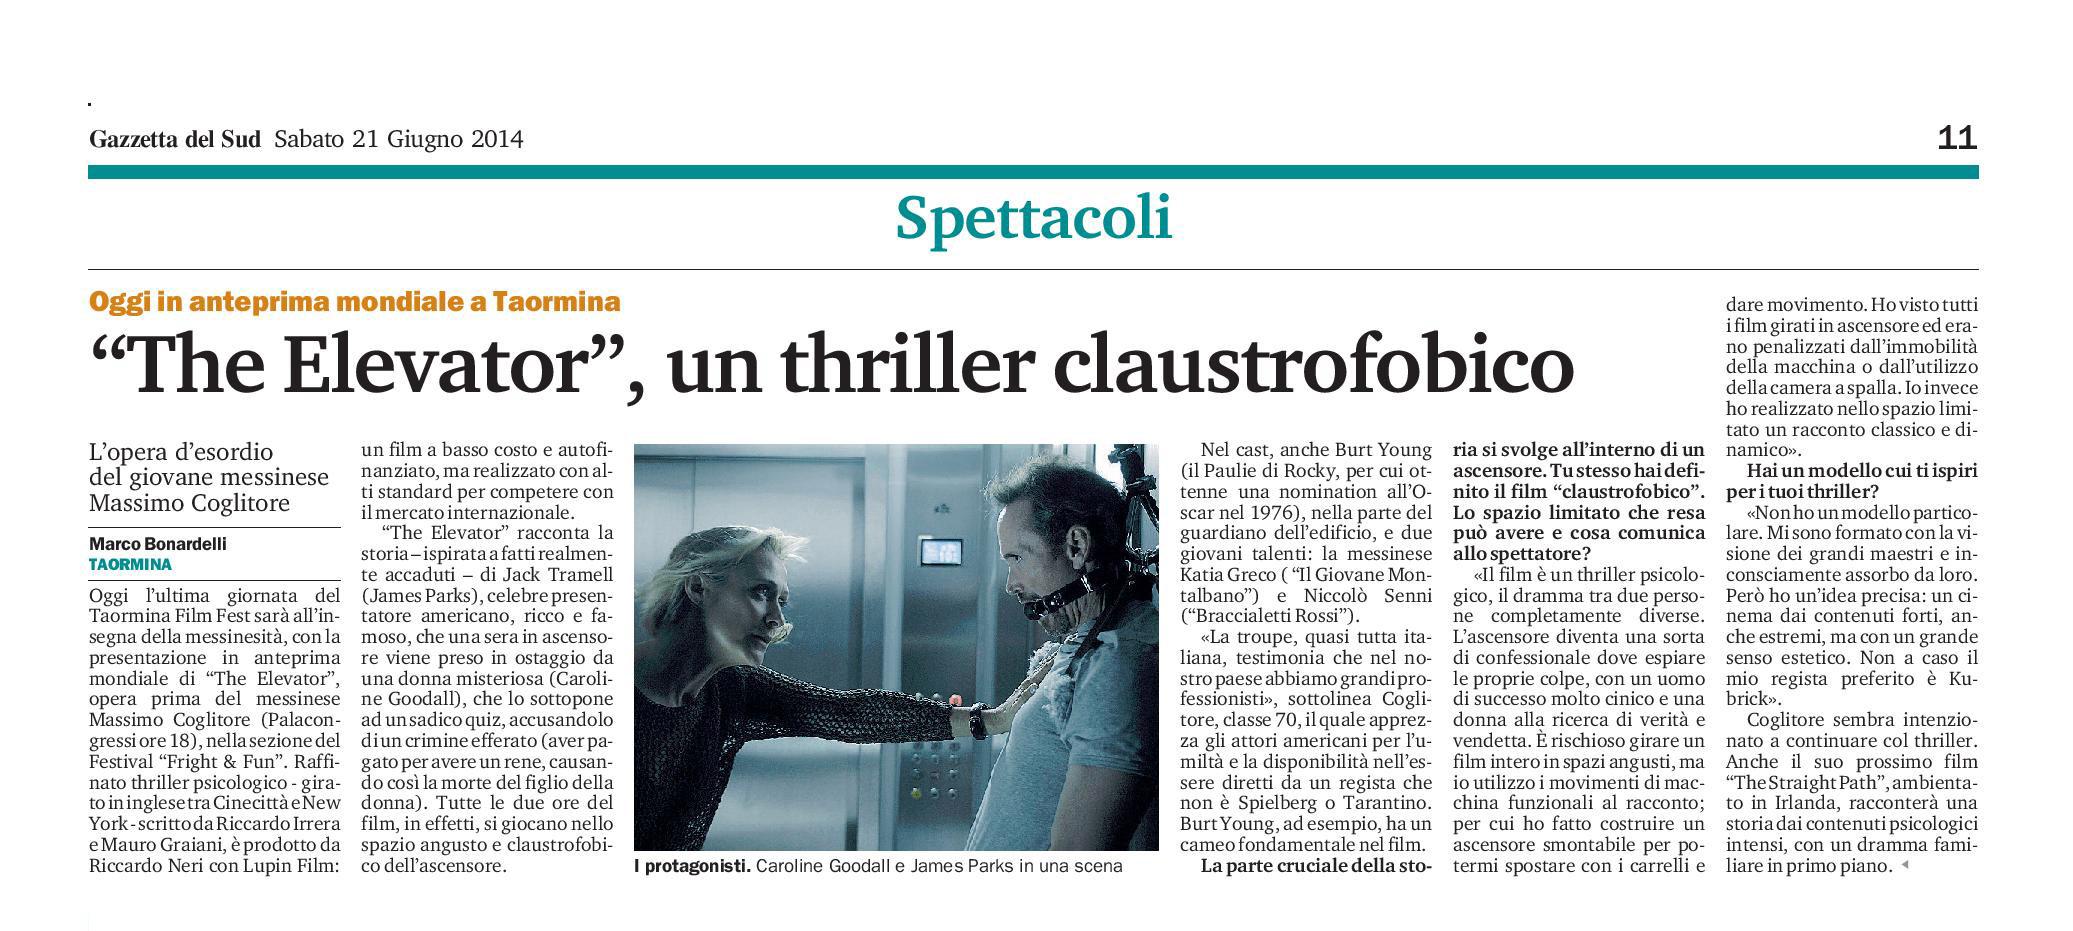 66 - Massimo Coglitore al Taormina Film Fest -The Elevator un thriller claustrofobico - 21 giugno 2014.jpg